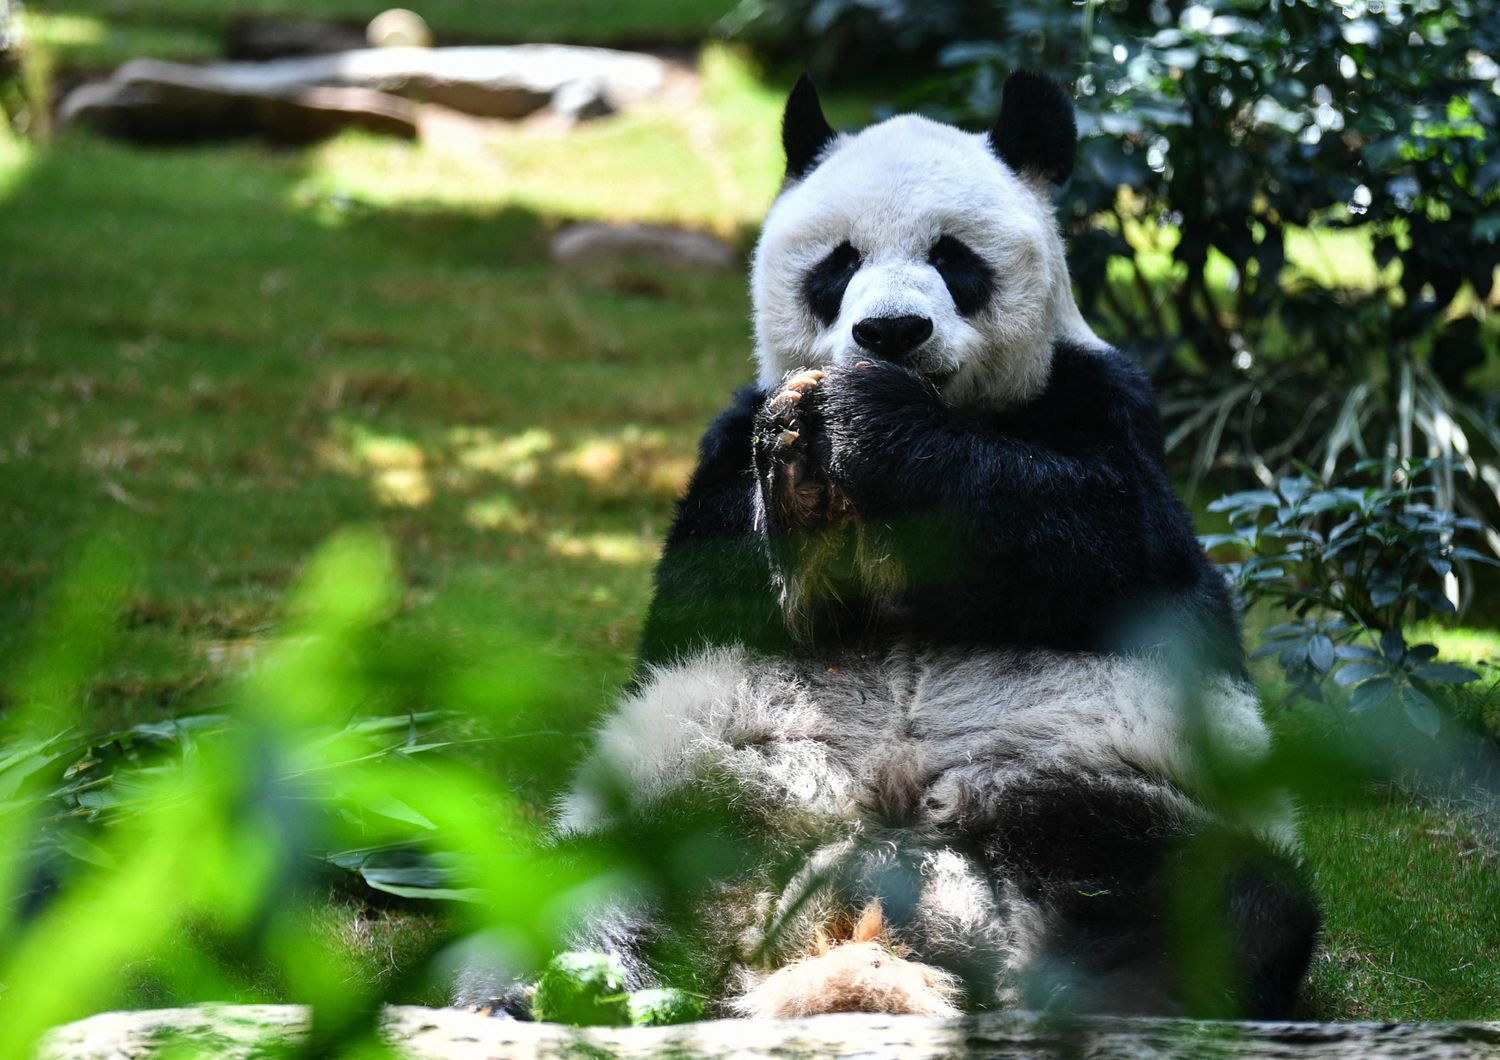 Hong Kong morto An An panda piu longevo in cattivita